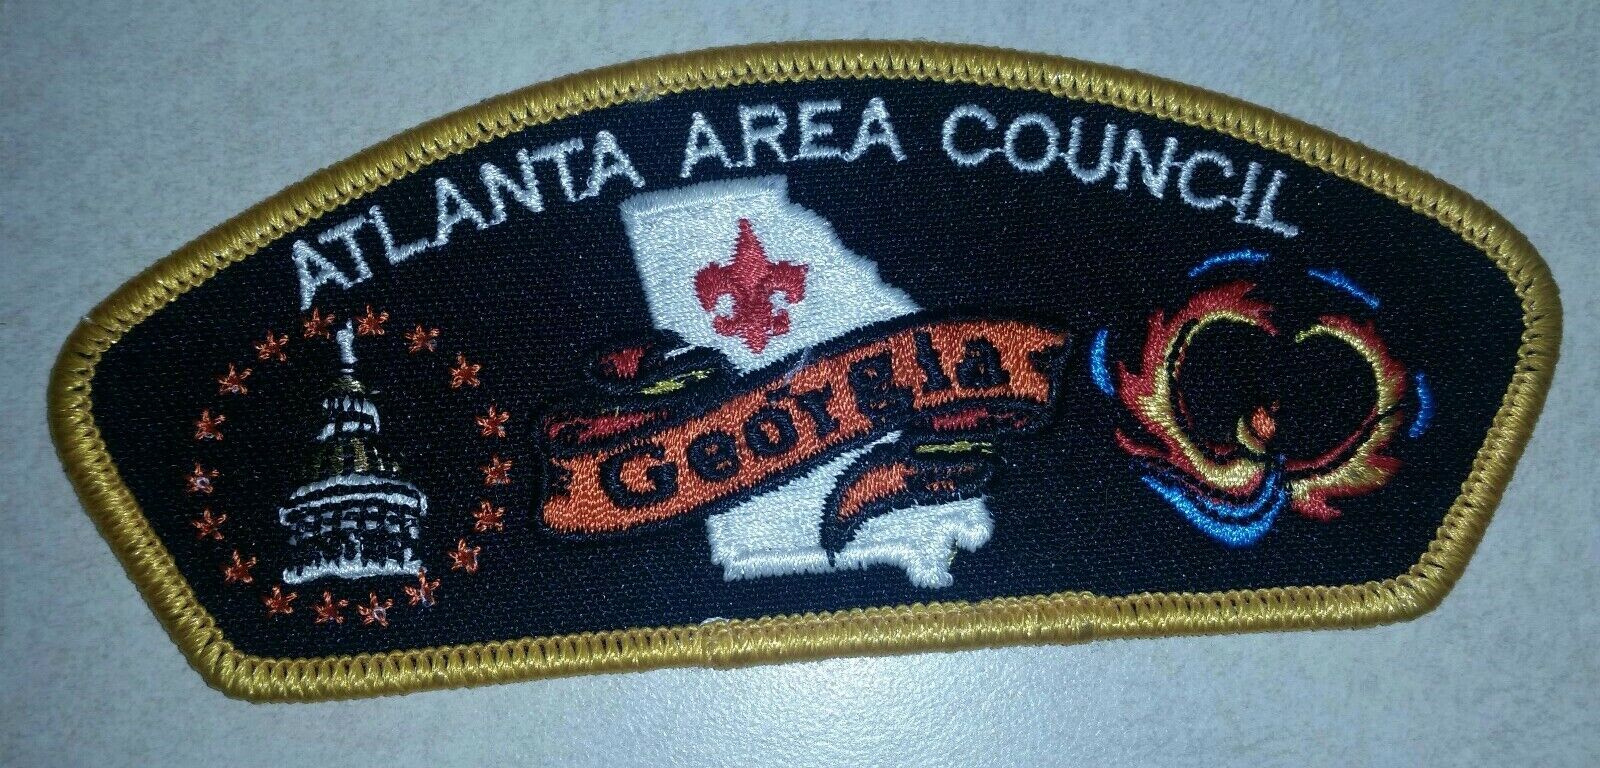 Atlanta Area Council Boy Scouts BSA collectable orange border patch 